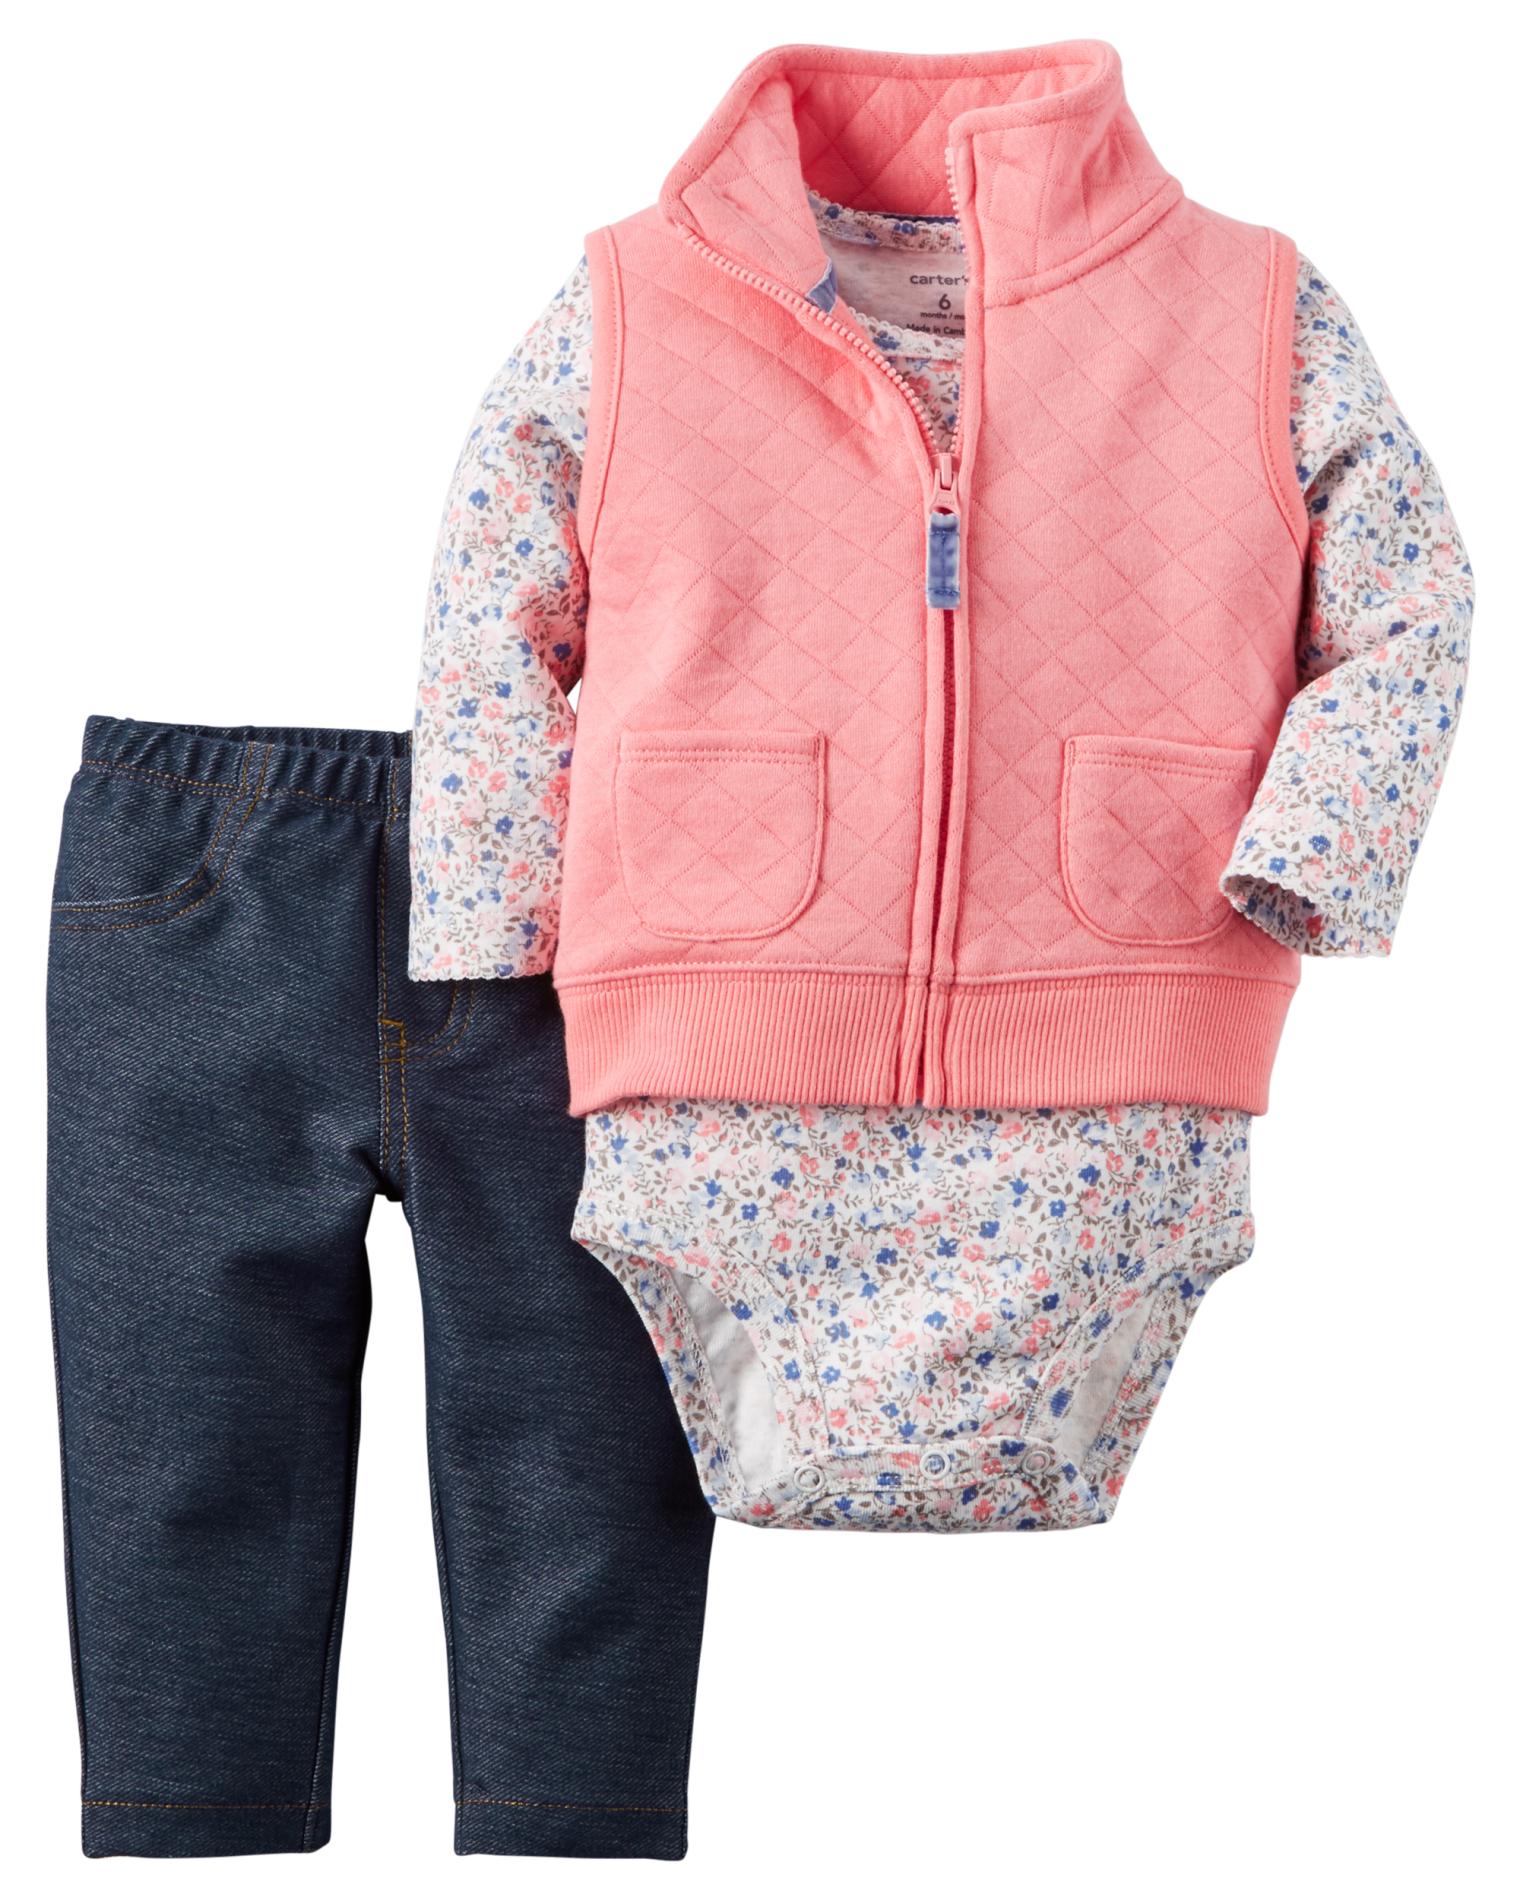 Carter's Newborn & Infant Girls' Vest, Bodysuit & Leggings - Floral